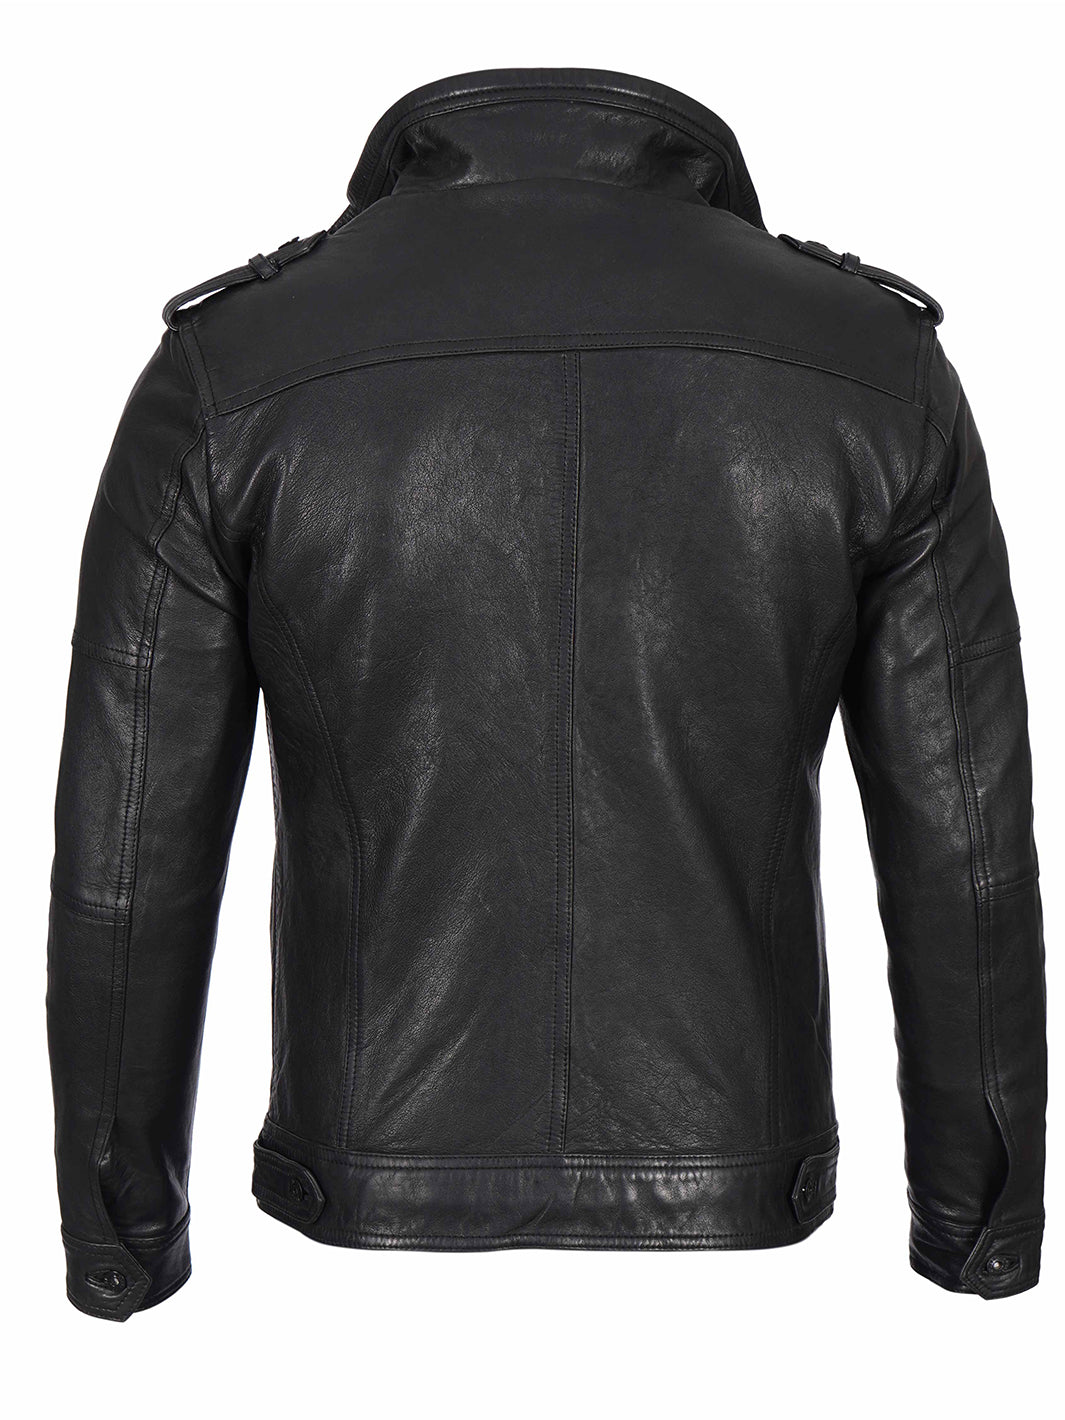 Mens Black Cafe Racer Leather Jacket